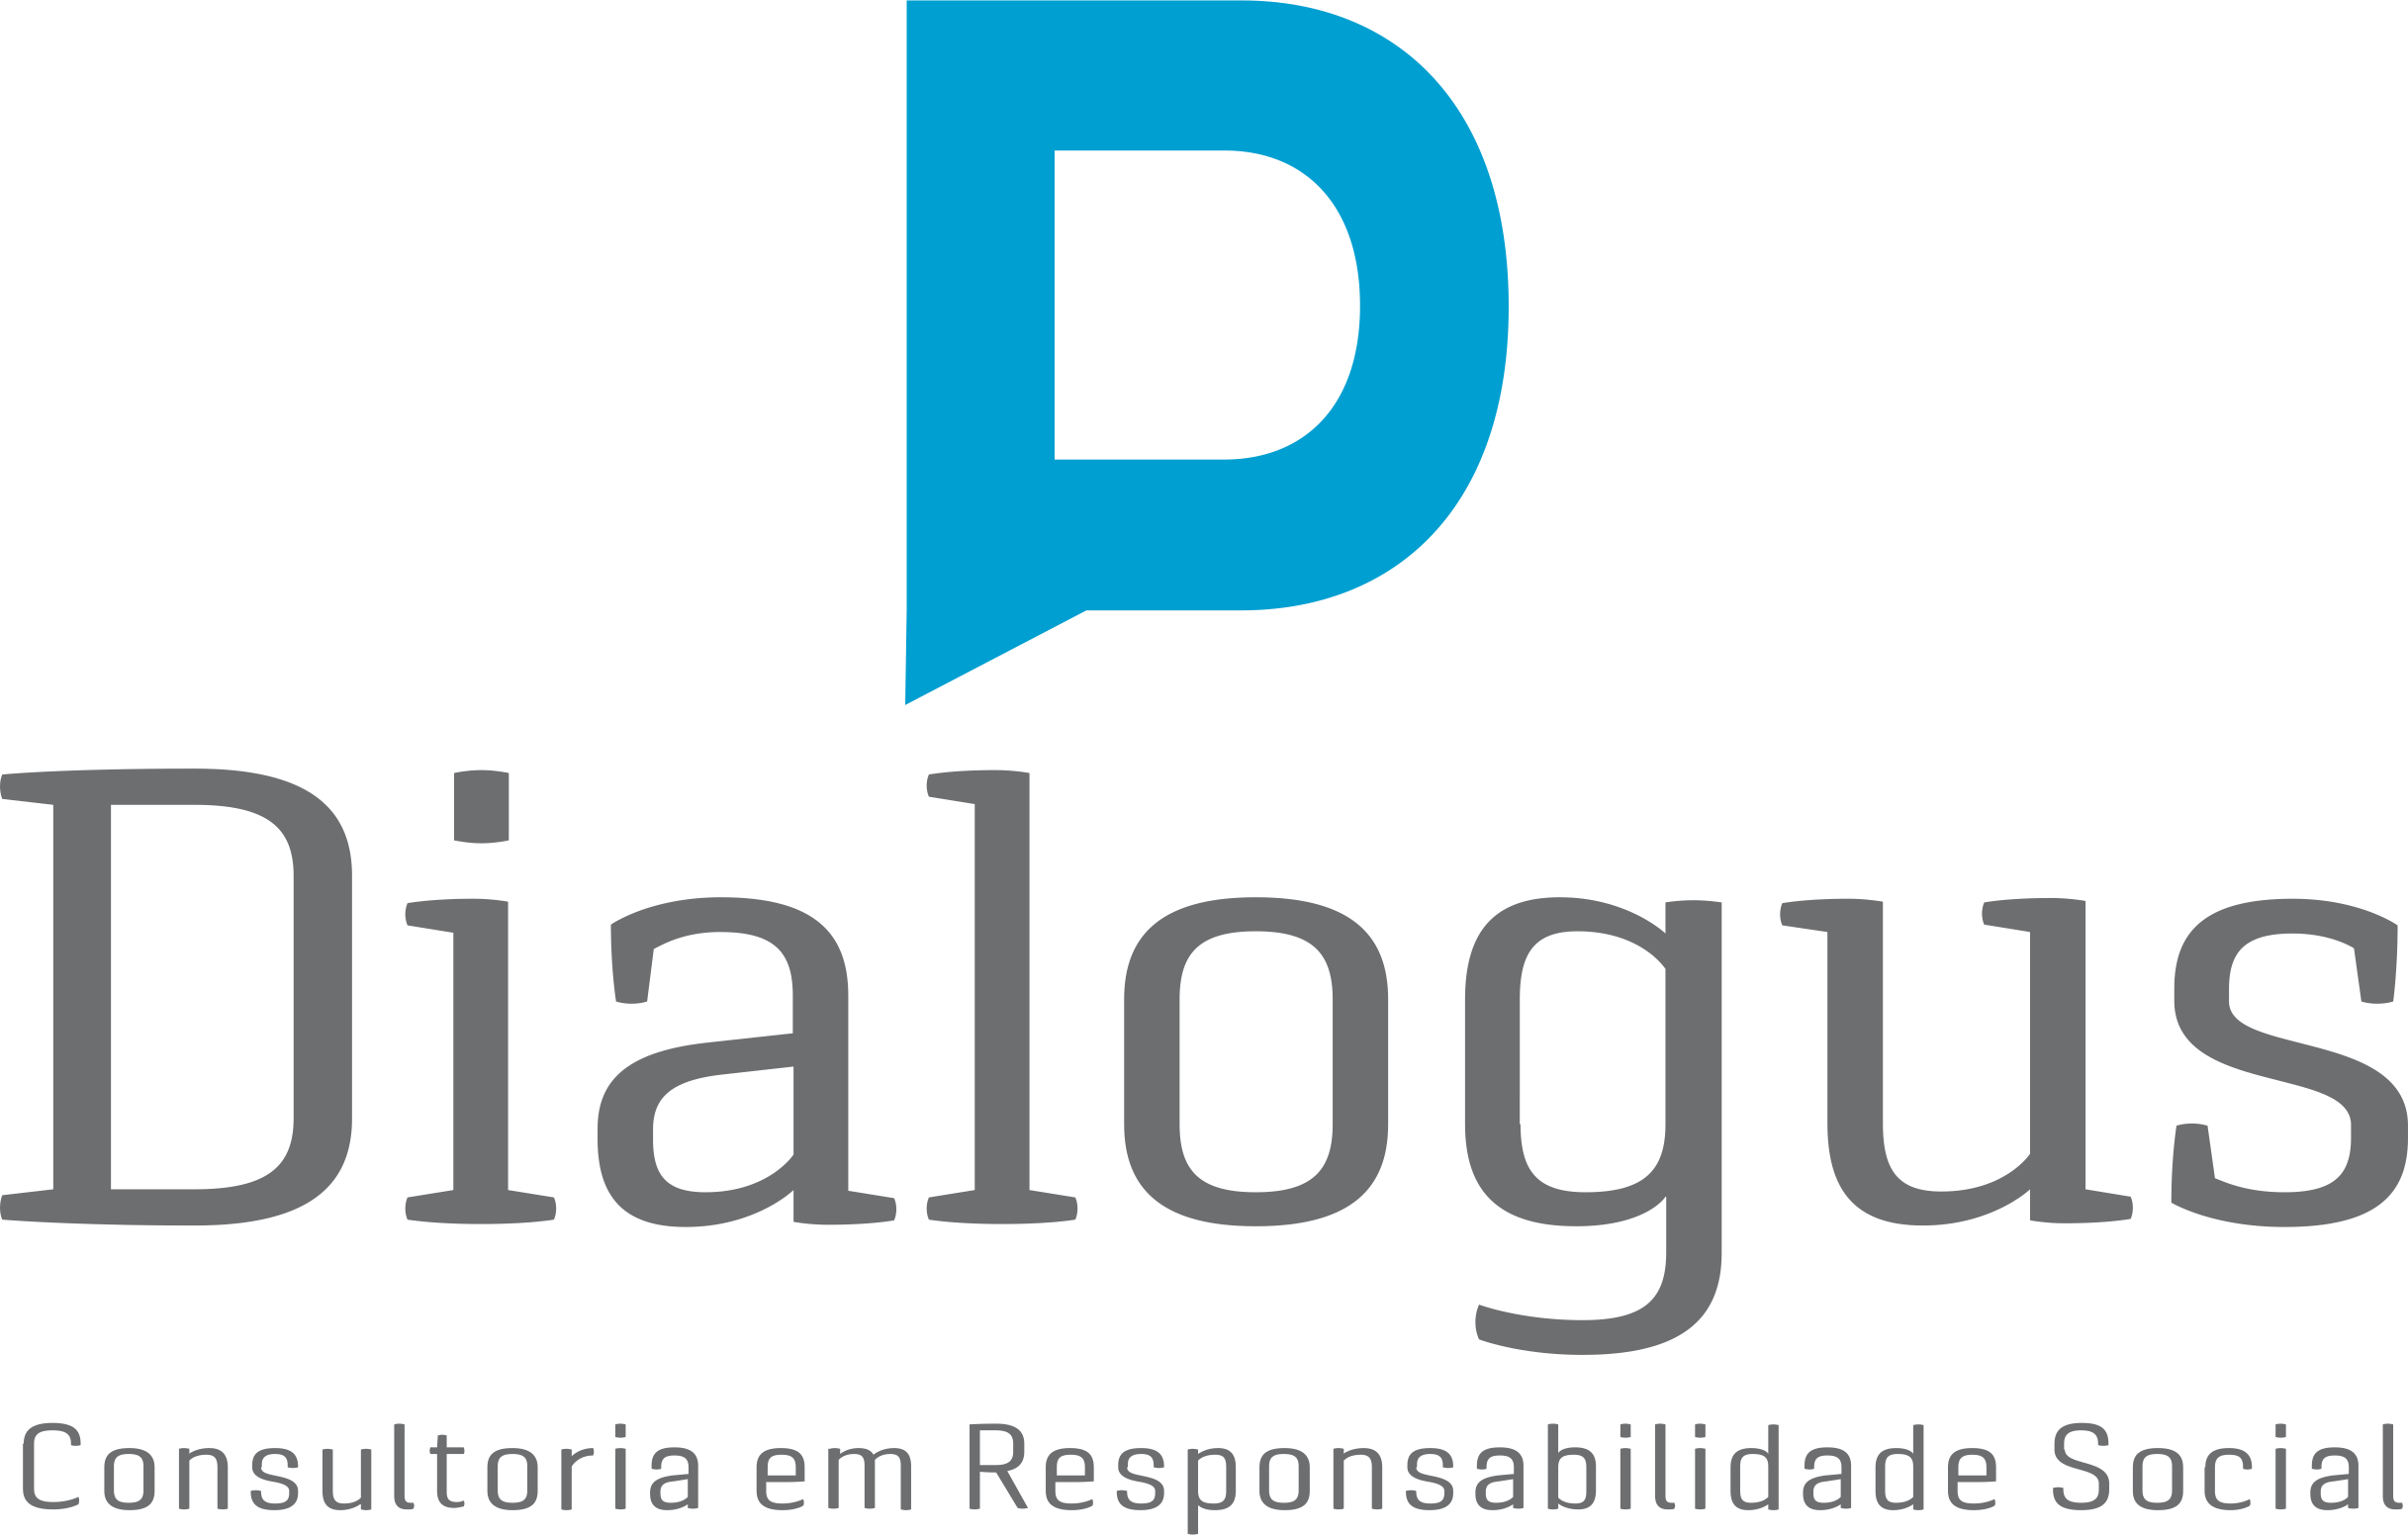 Dialogus Responsabilidade Social - Consultoria - Compras Sustentáveis - Fortaleza/CE